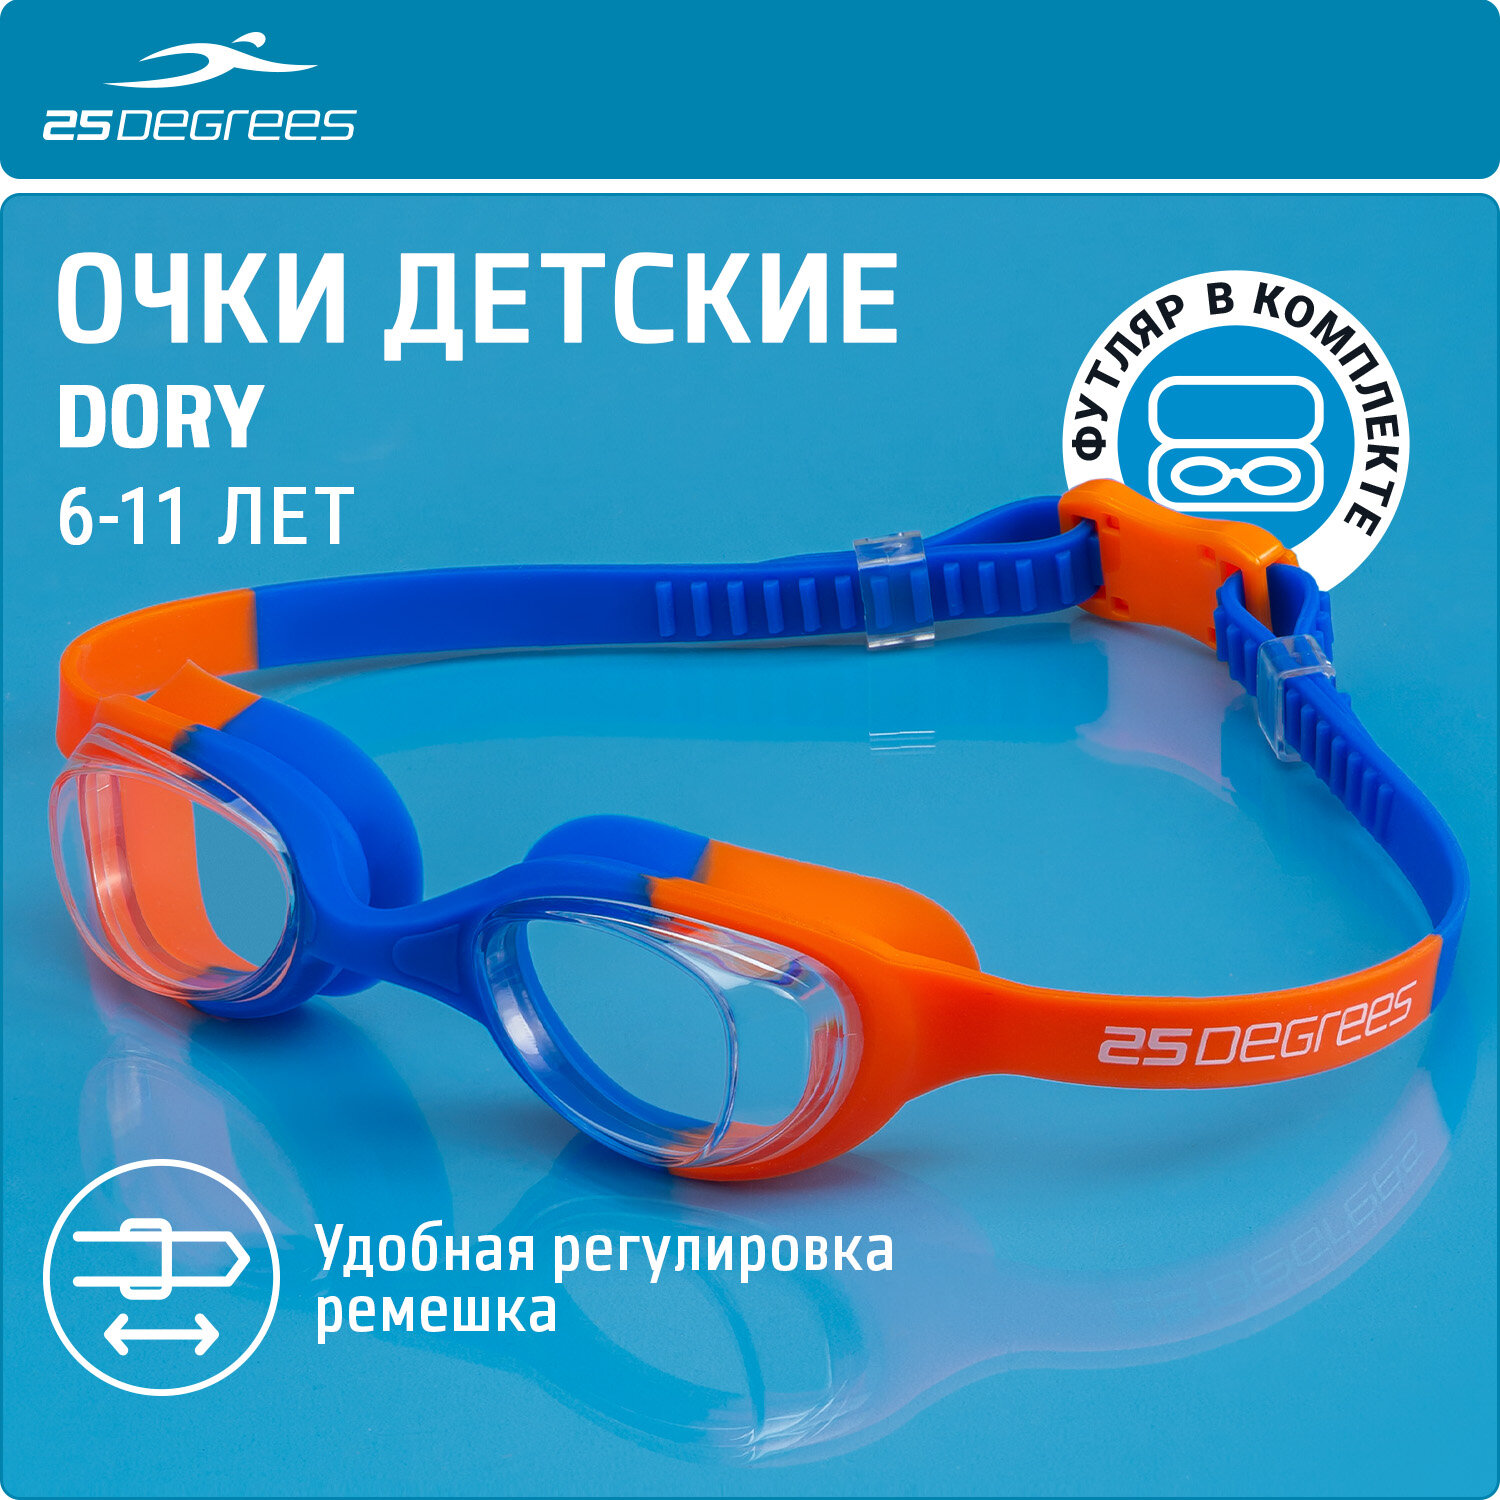 Очки для плавания детские 25DEGREES Dory Navy/Orange футляр в комплекте, цвет синий/оранжевый